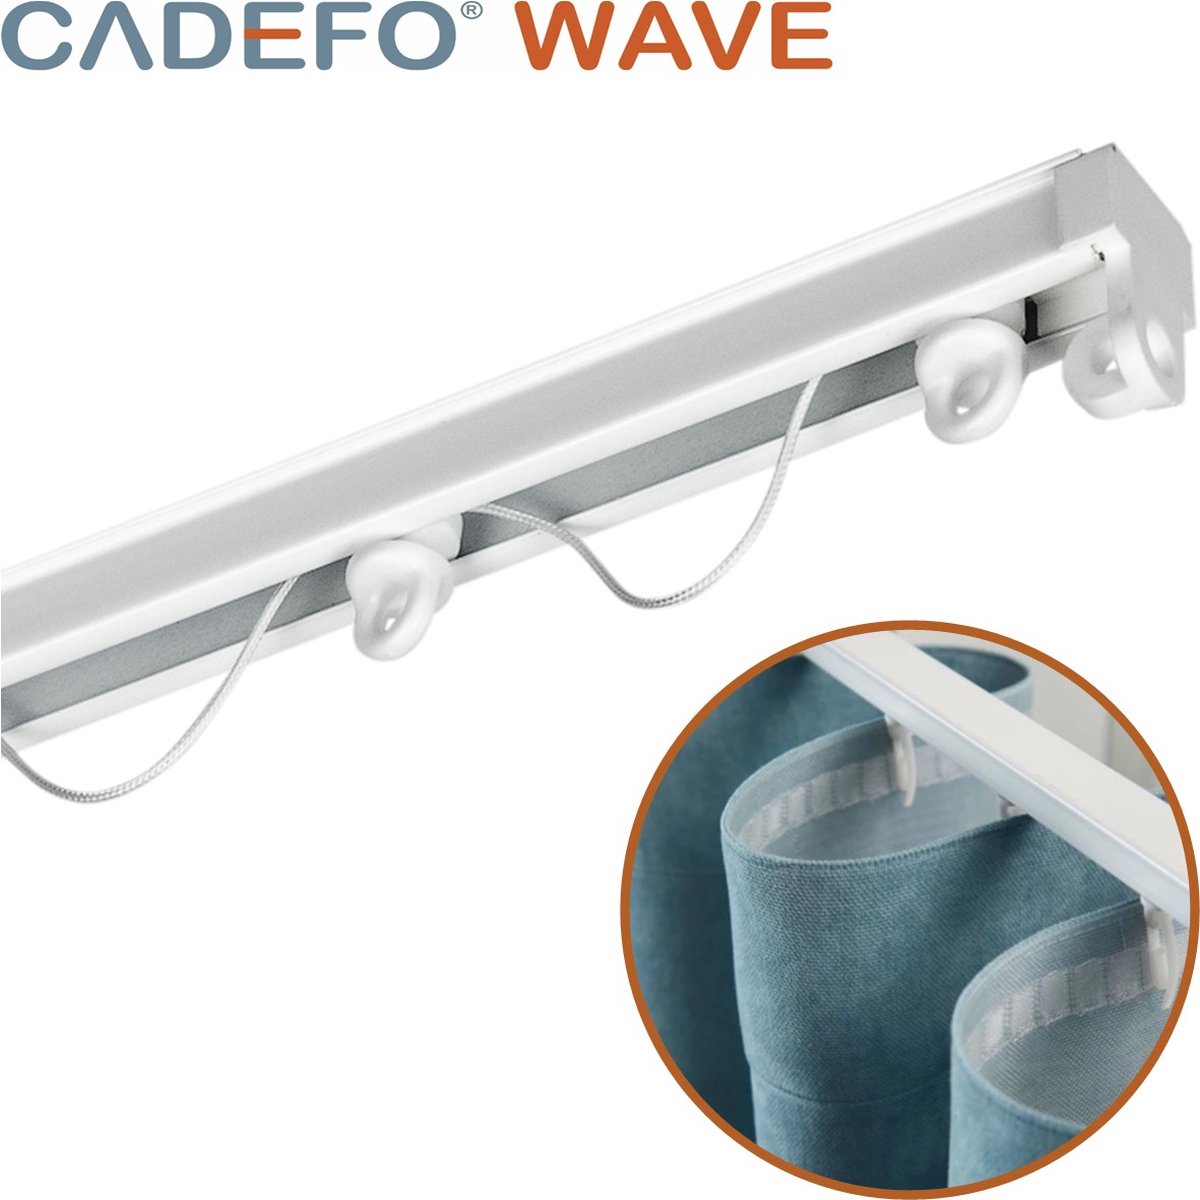 CADEFO WAVE (301 - 350 cm) Gordijnrails - Compleet op maat! - UIT 1 STUK - Leverbaar tot 6 meter - Plafondbevestiging - Lengte 341 cm